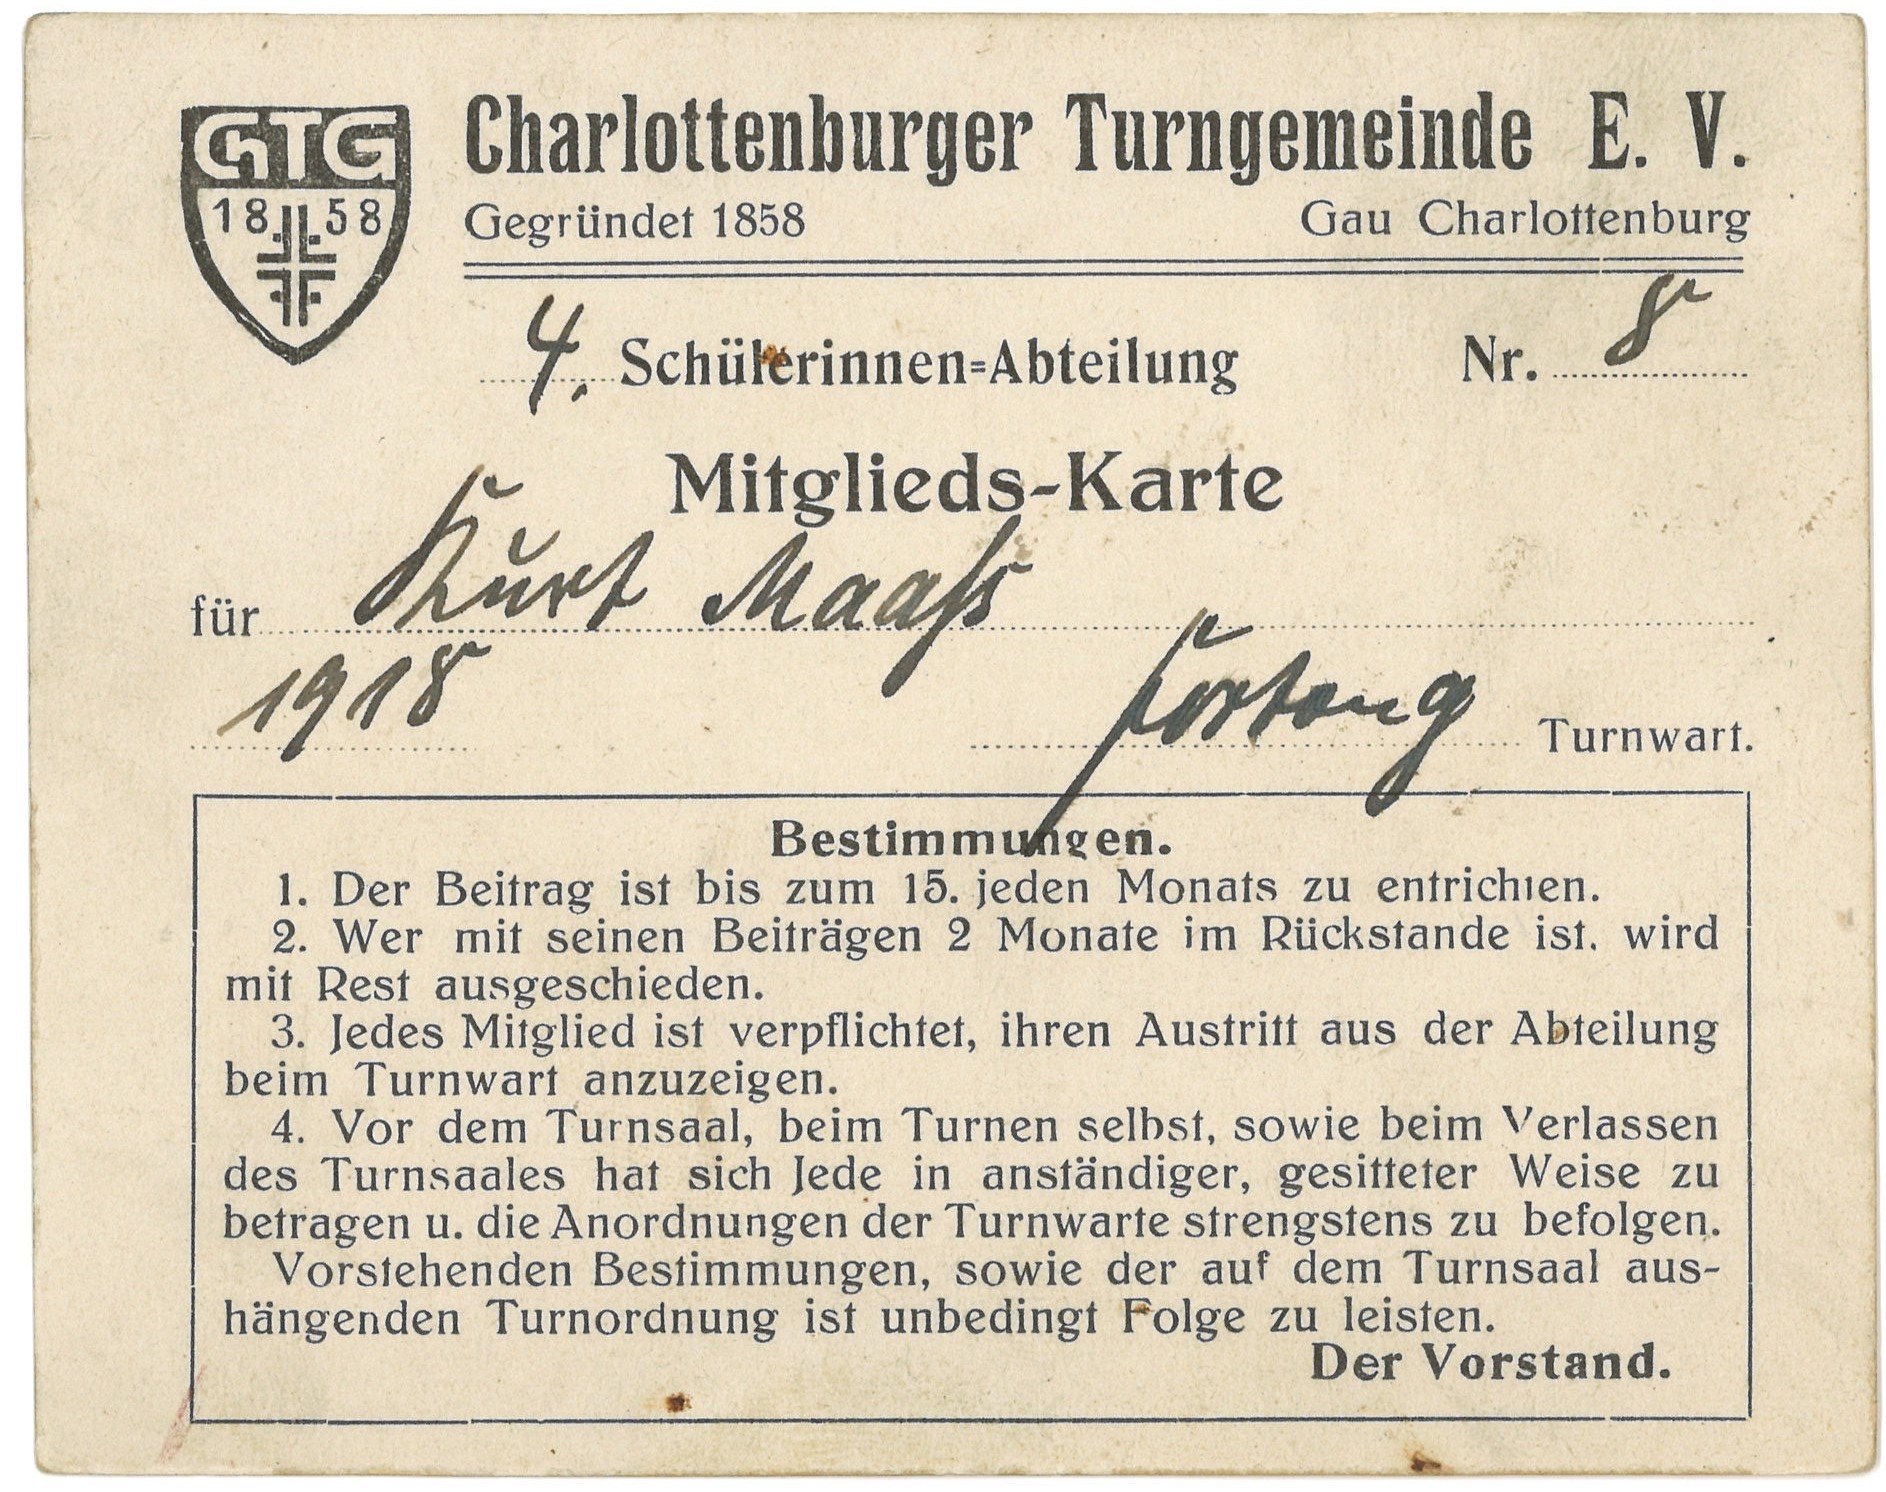 Mitgliedskarte der Charlottenburger Turngemeinde für Kurt Maaß 1918 (Landesgeschichtliche Vereinigung für die Mark Brandenburg e.V., Archiv CC BY)